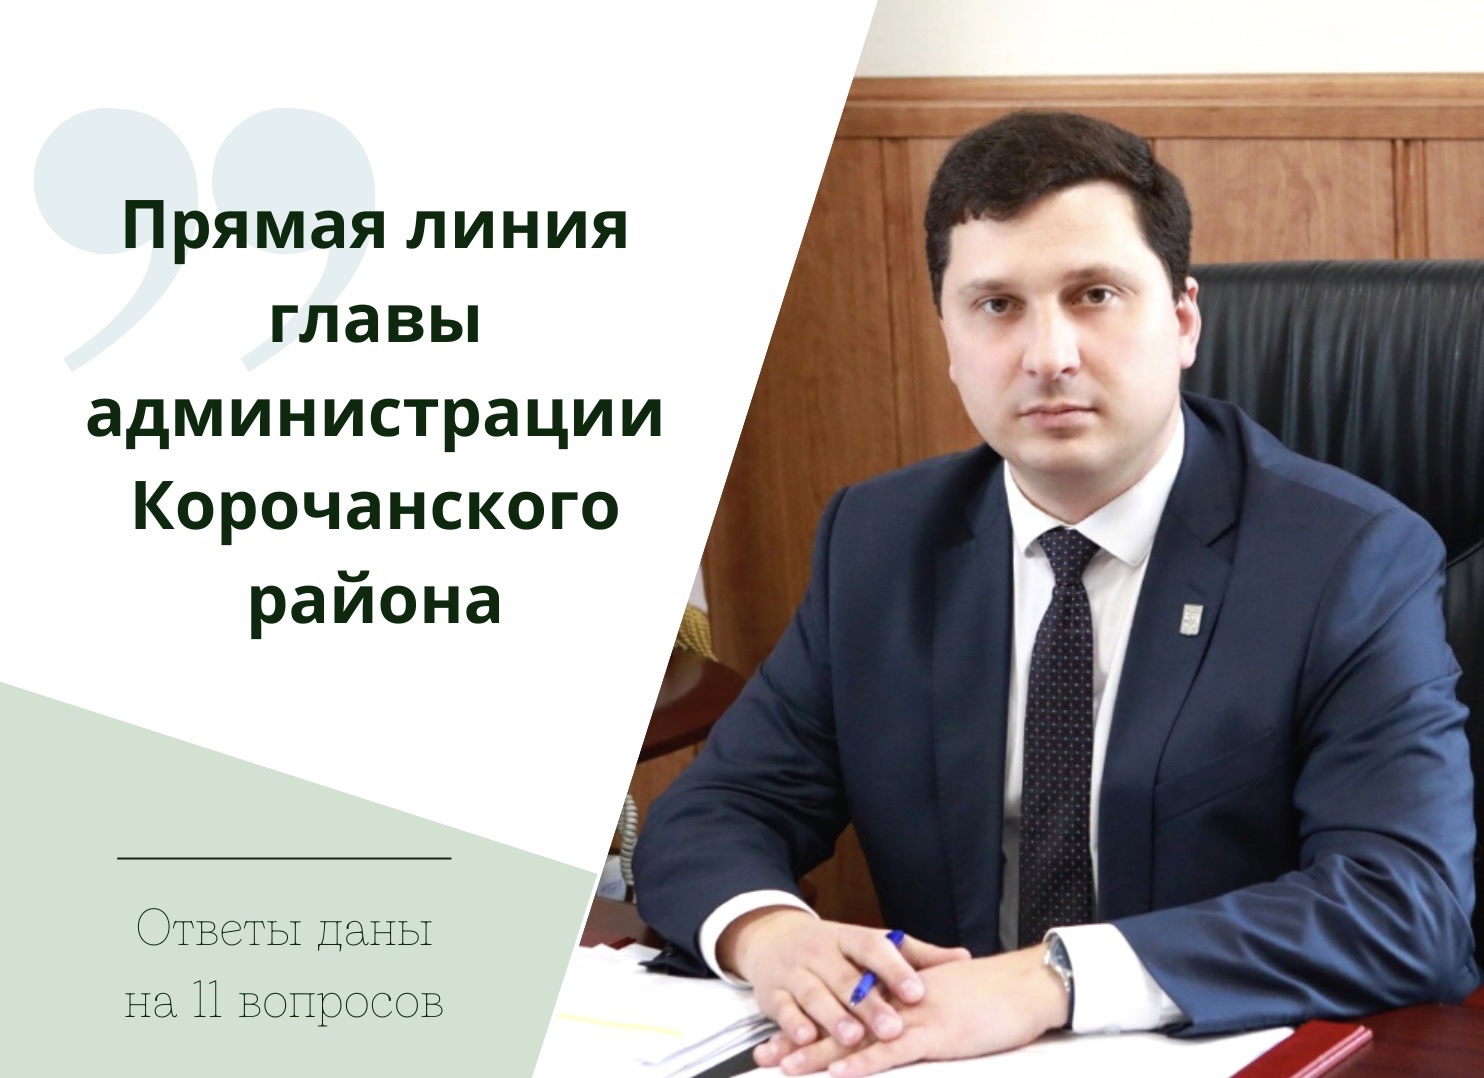 В ходе ежедневной прямой линии поступило 11 вопросов главе администрации Корочанского района.